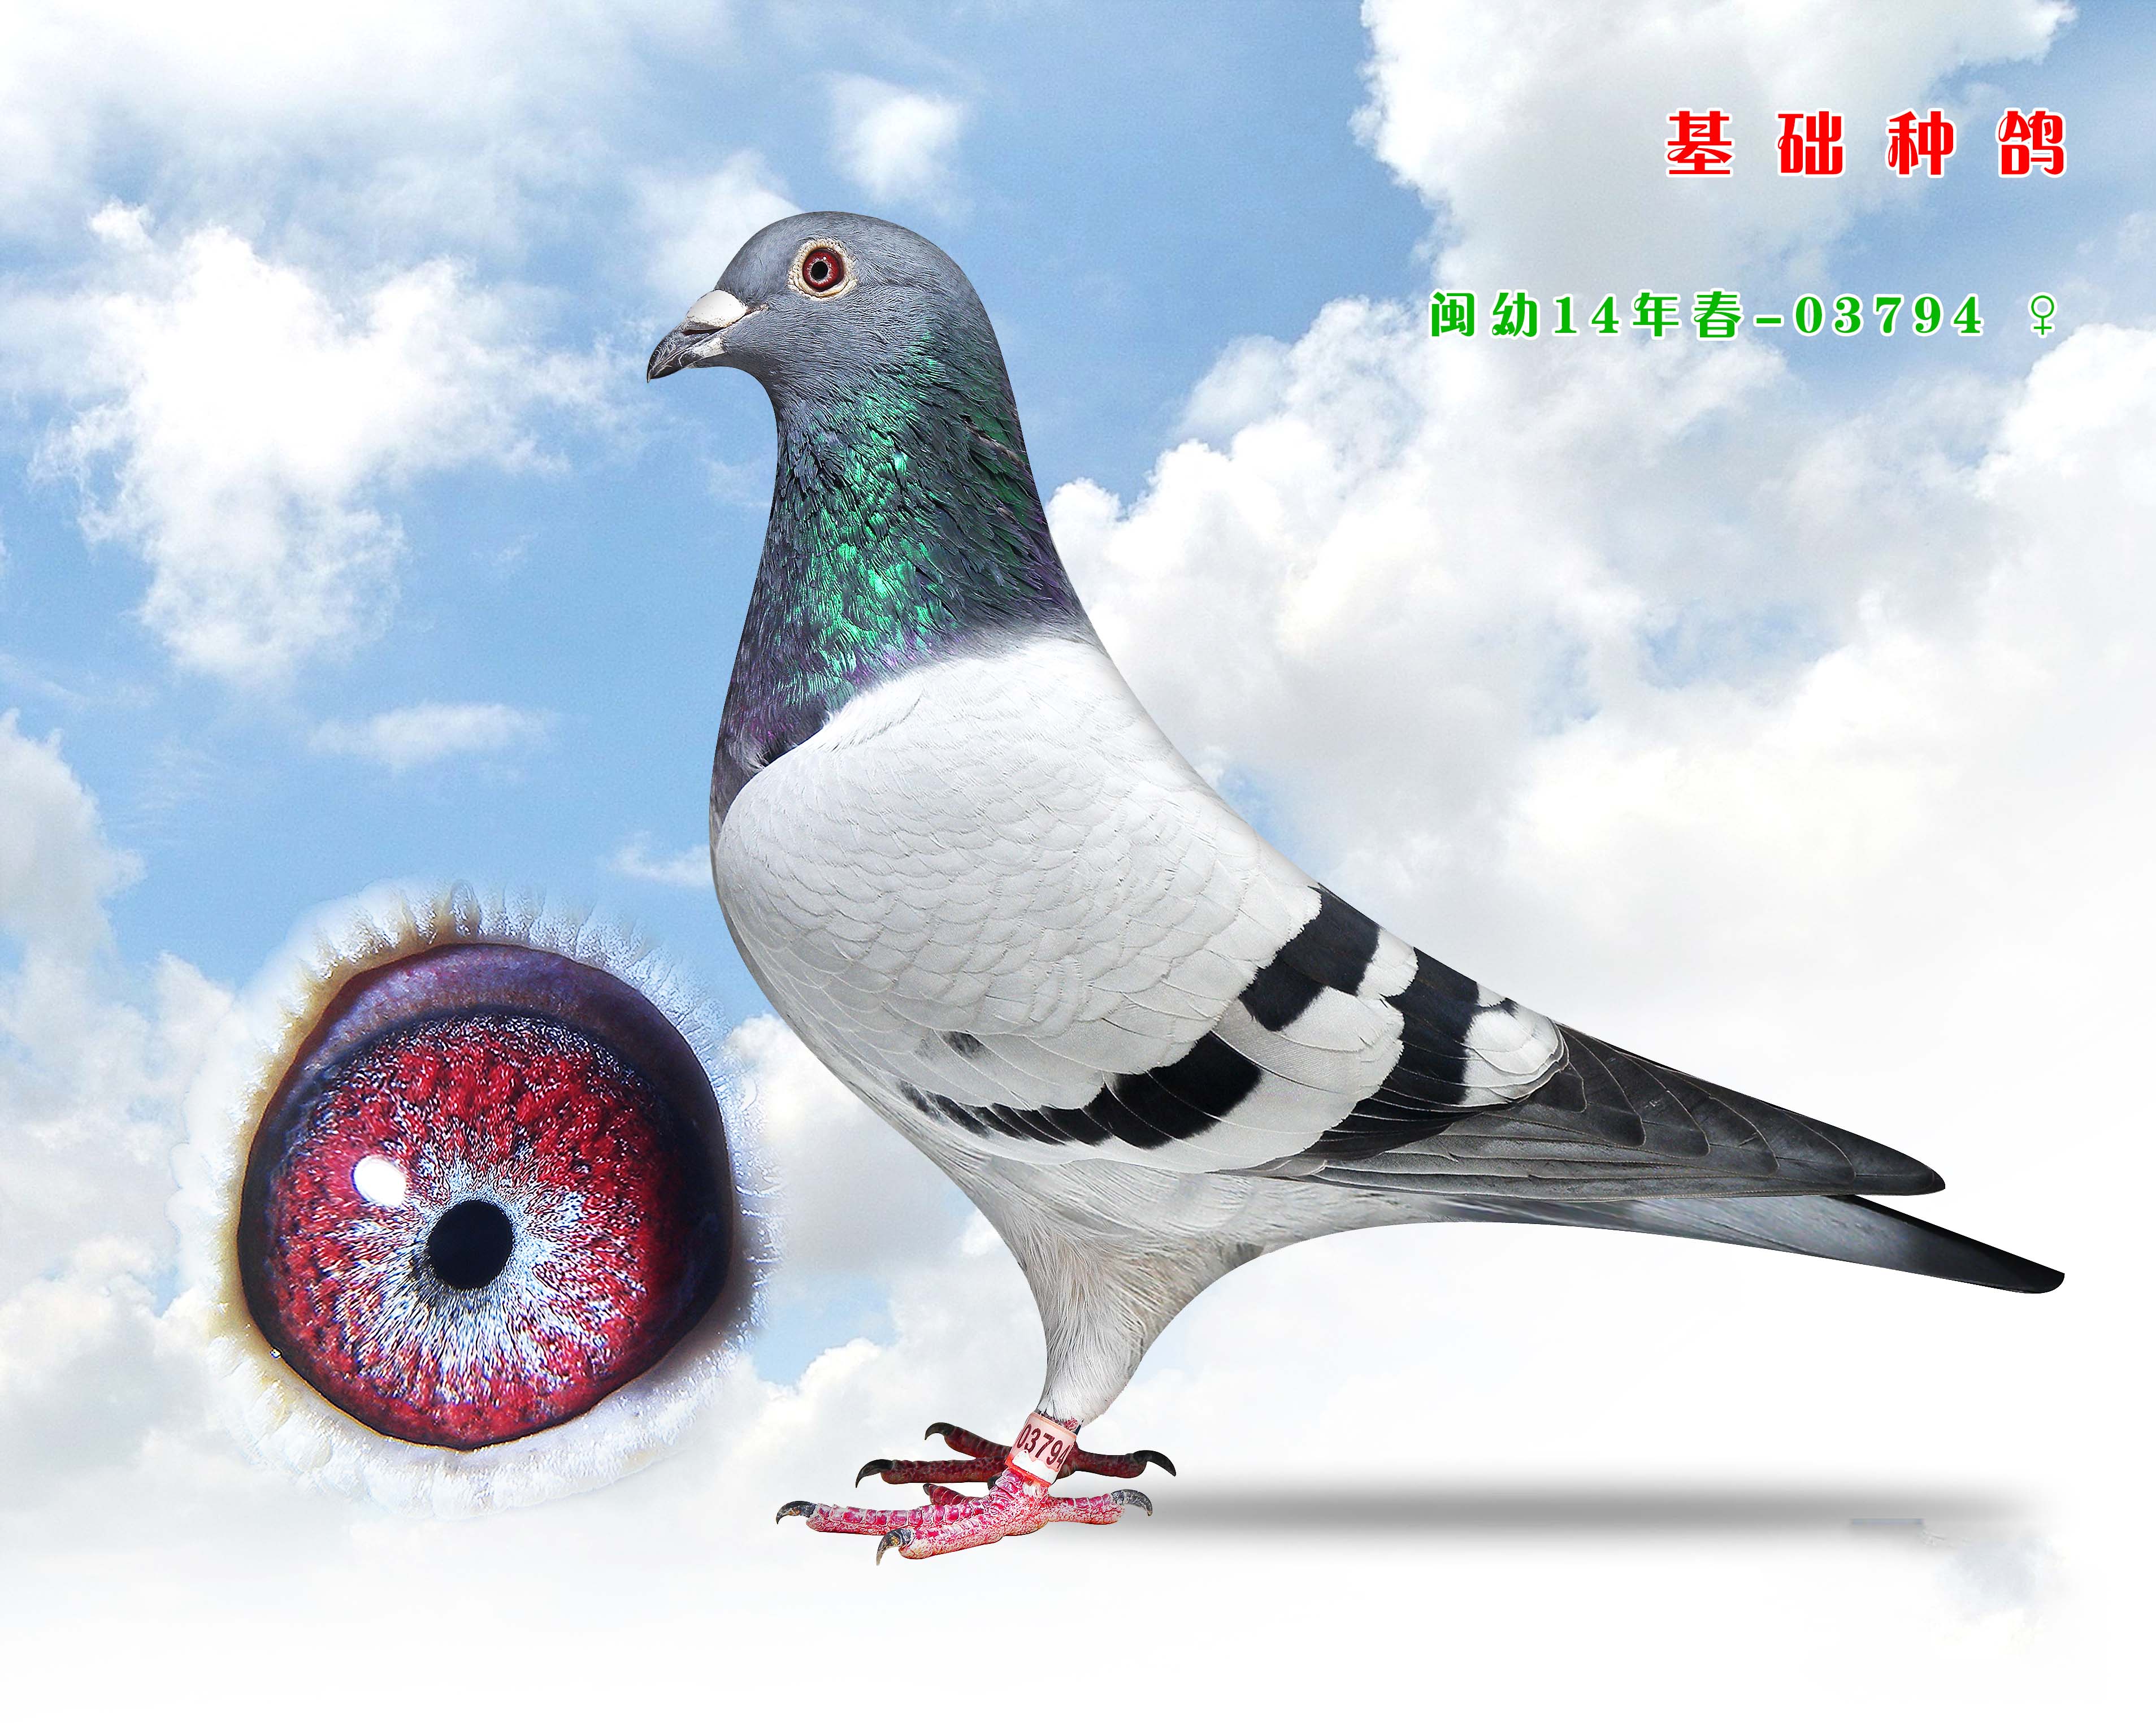 超级种鸽眼图集欣赏_藏经阁_赛鸽资讯网